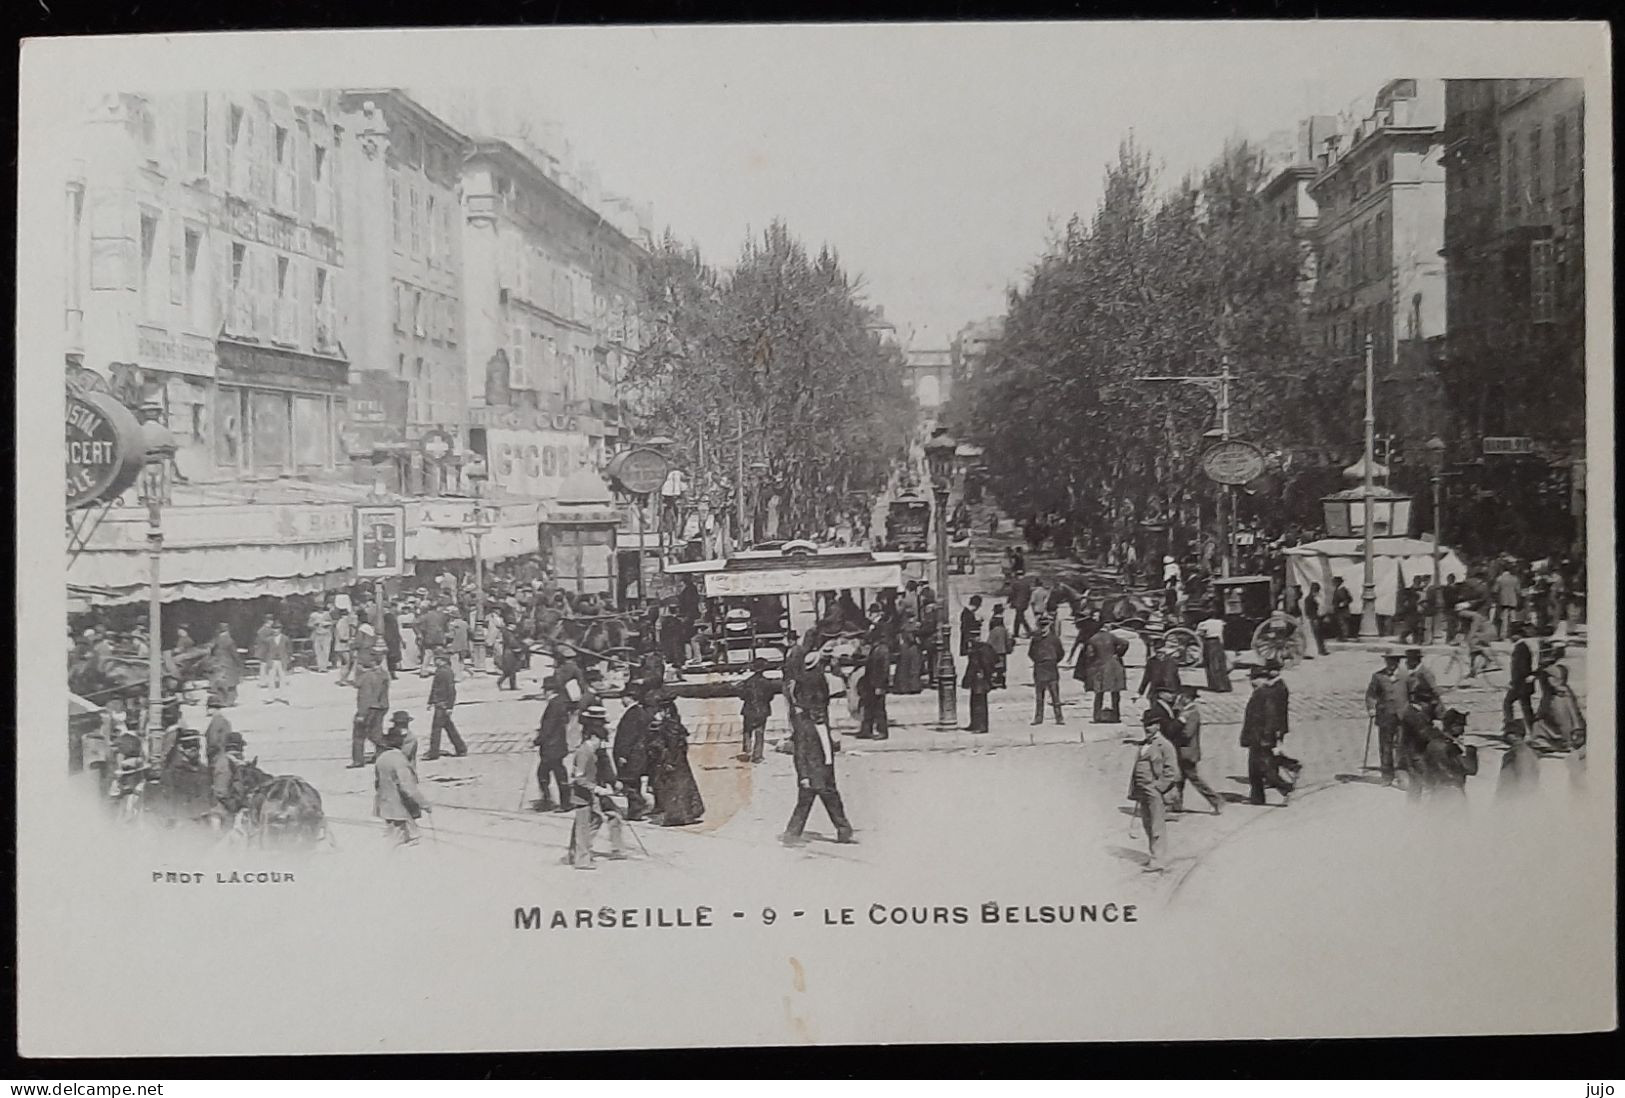 13 - MARSEILLE - 9 - LE COURS BELSUNCE - Aminée - Photo LACOUR - The Canebière, City Centre